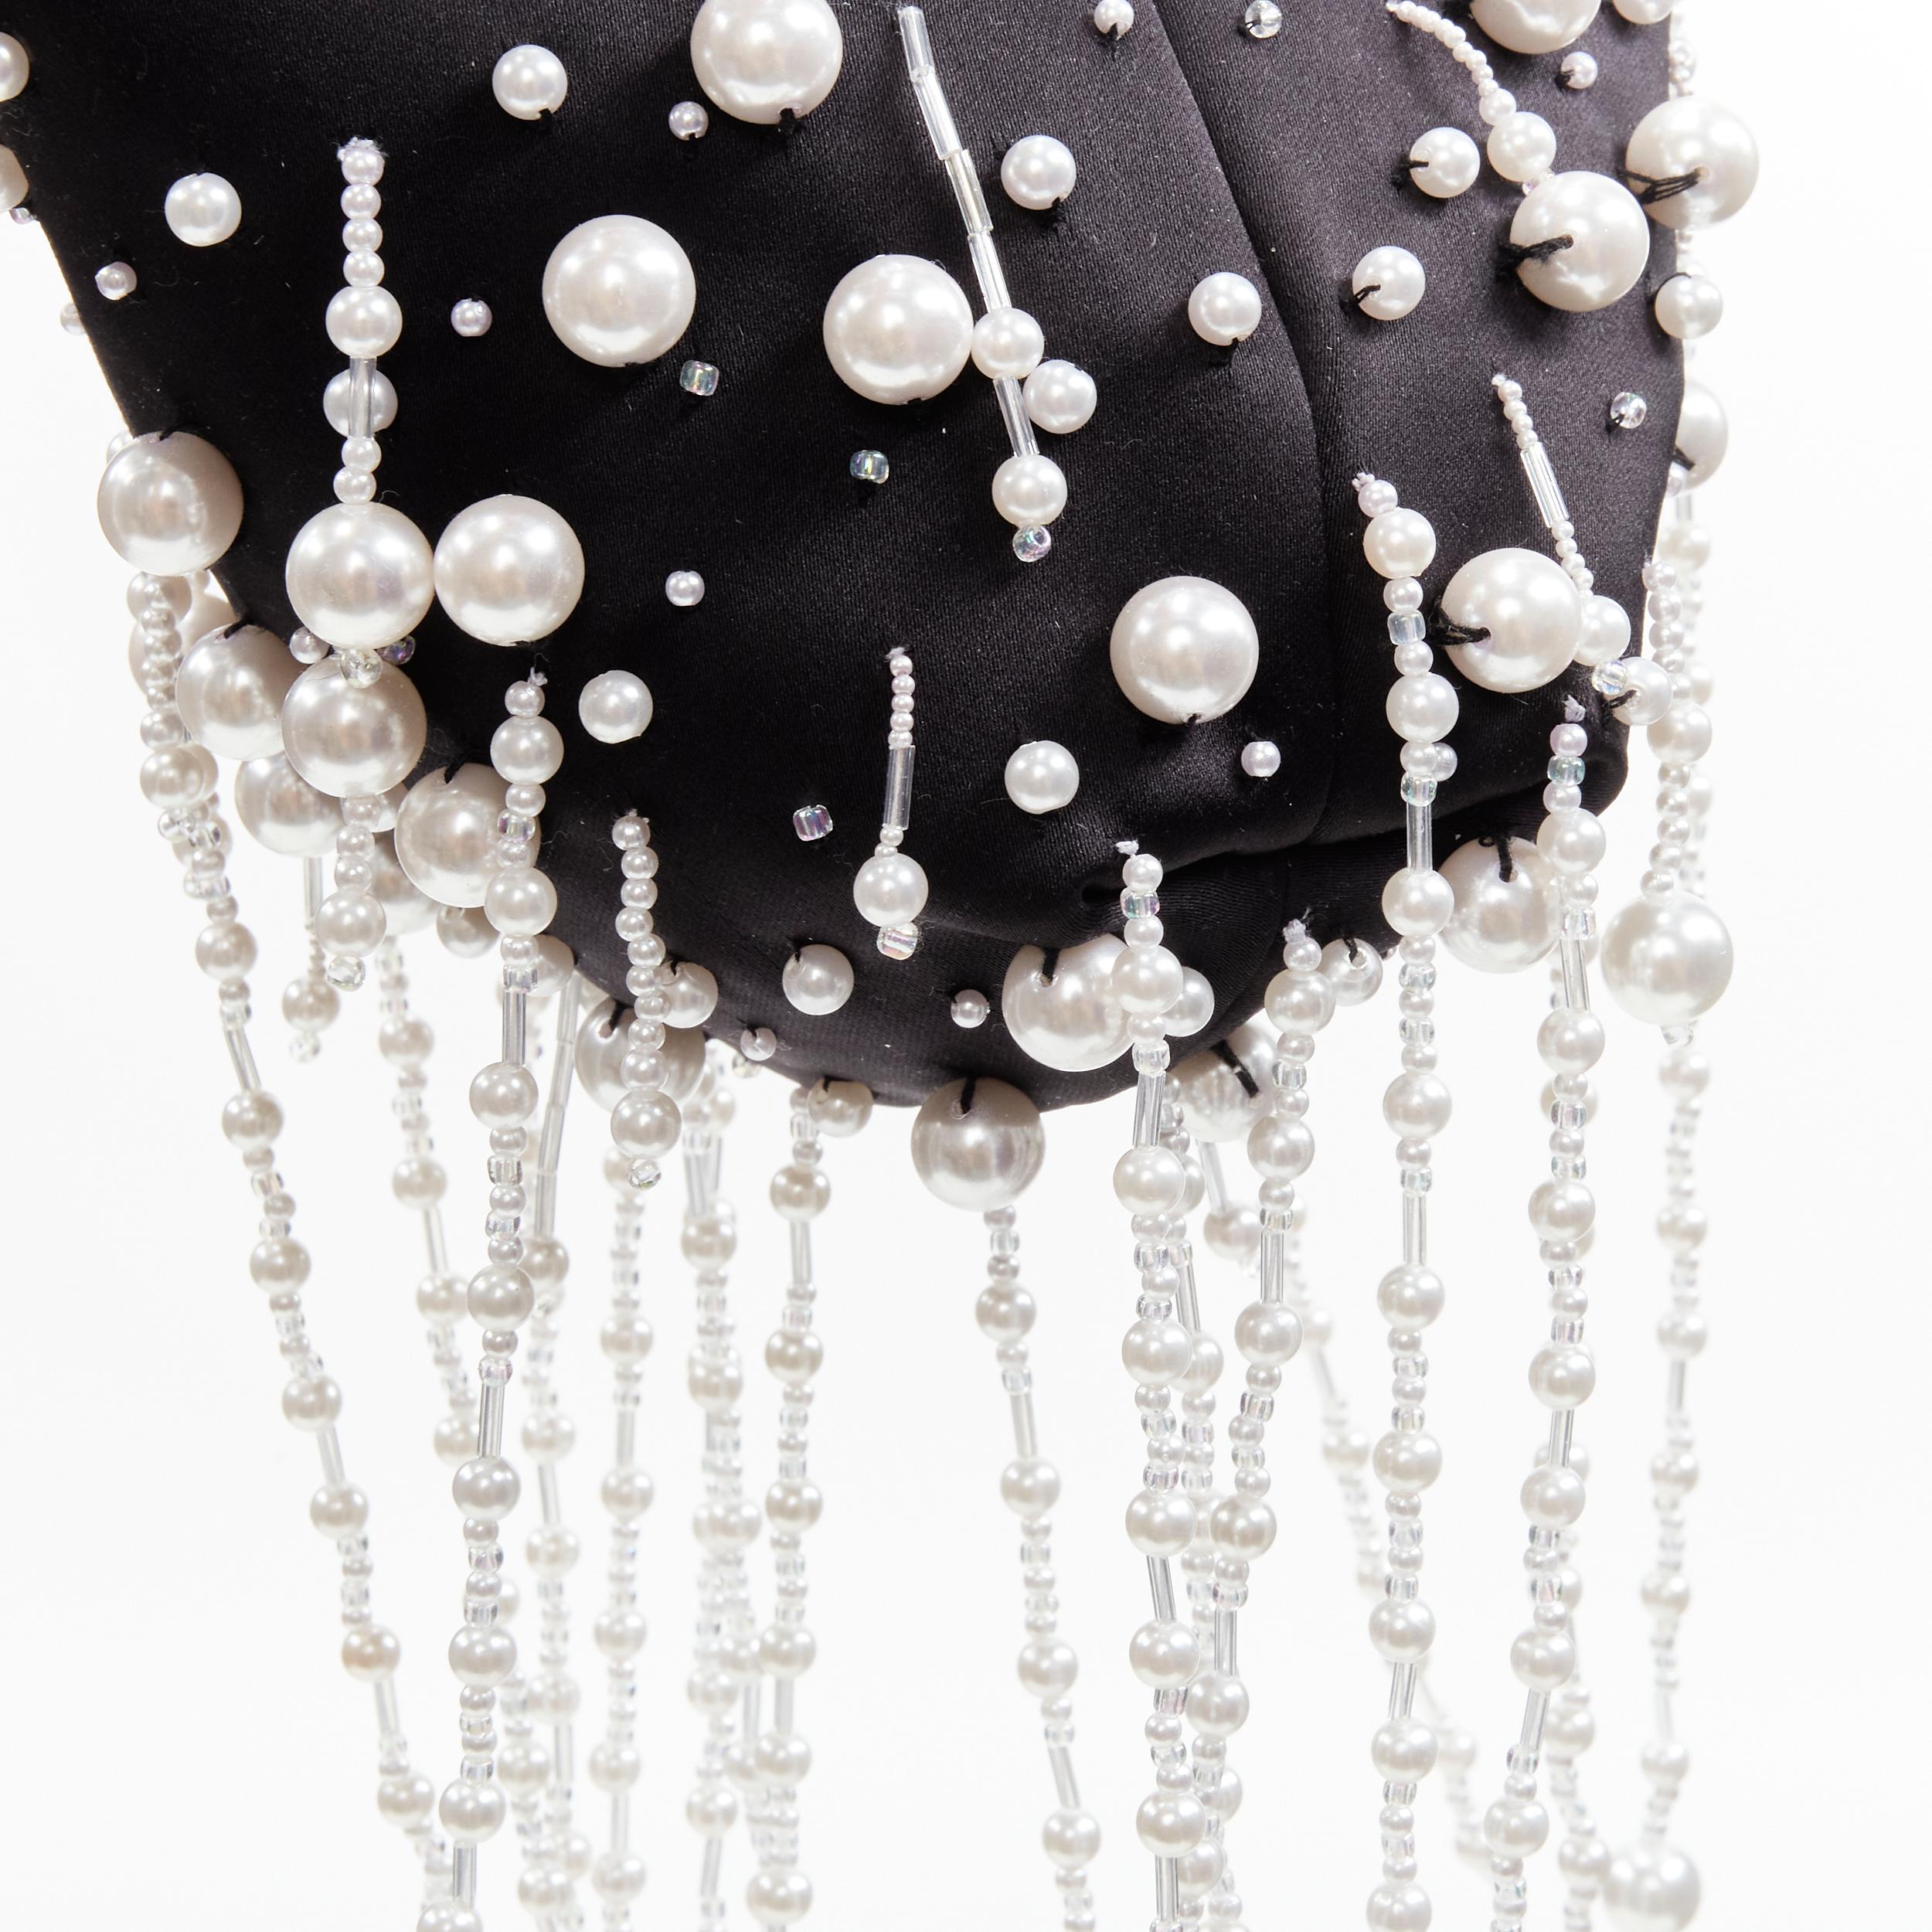 new CHRISTOPHER KANE Runway pearl embellished black satin evening bag 4